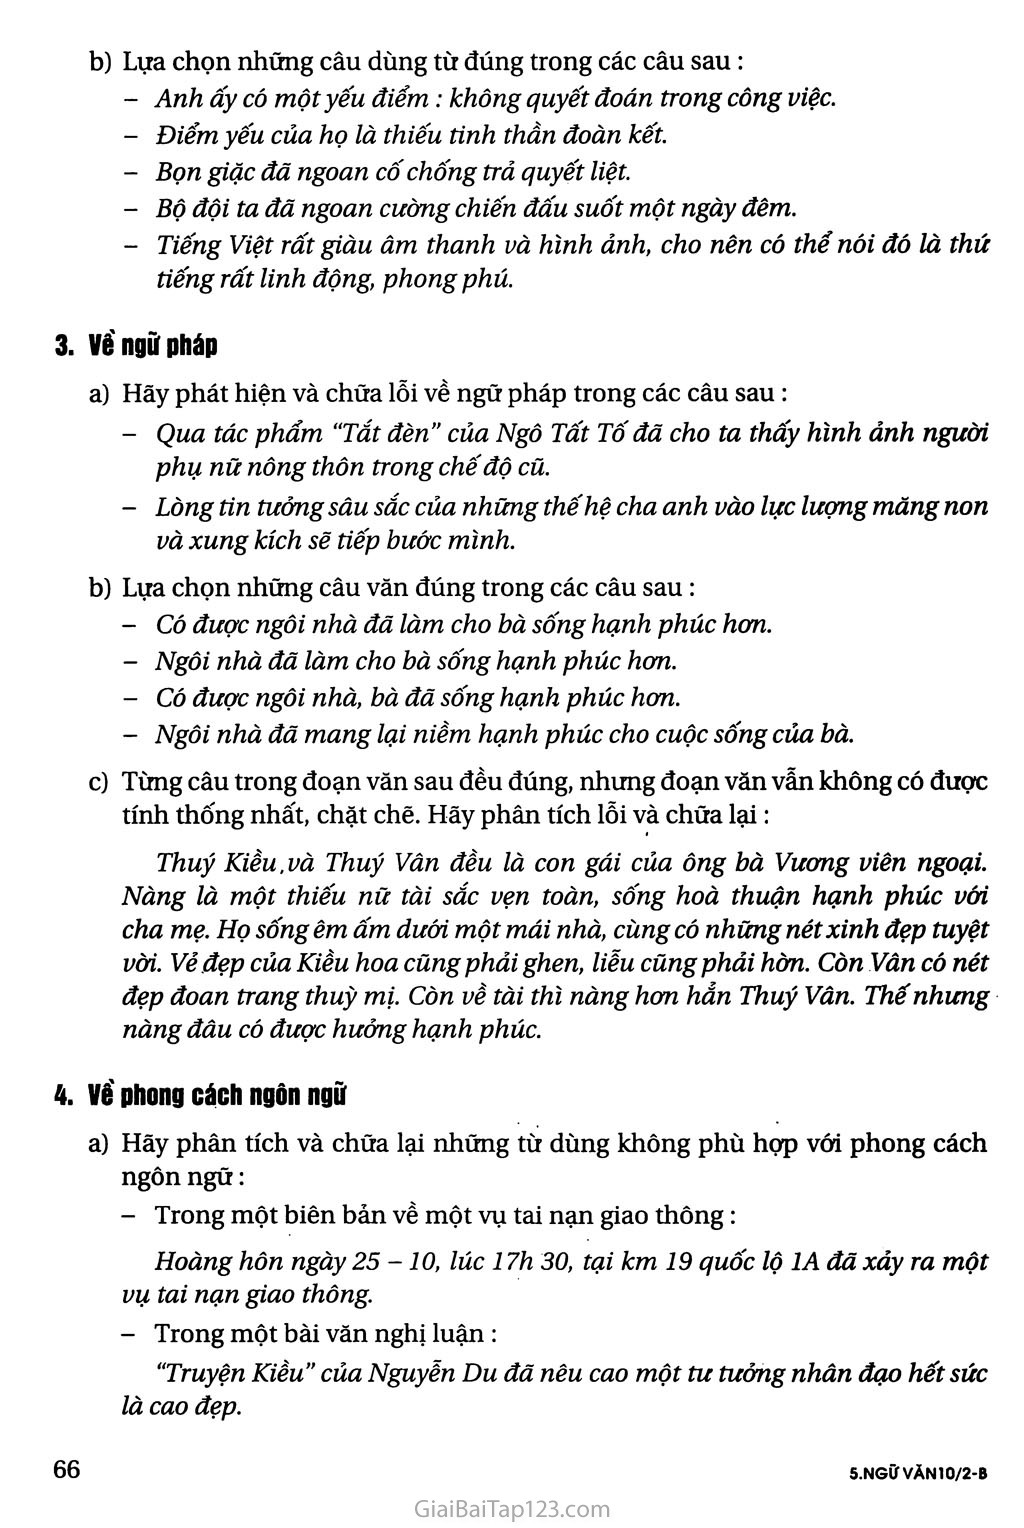 Những yêu cầu về sử dụng tiếng Việt trang 2